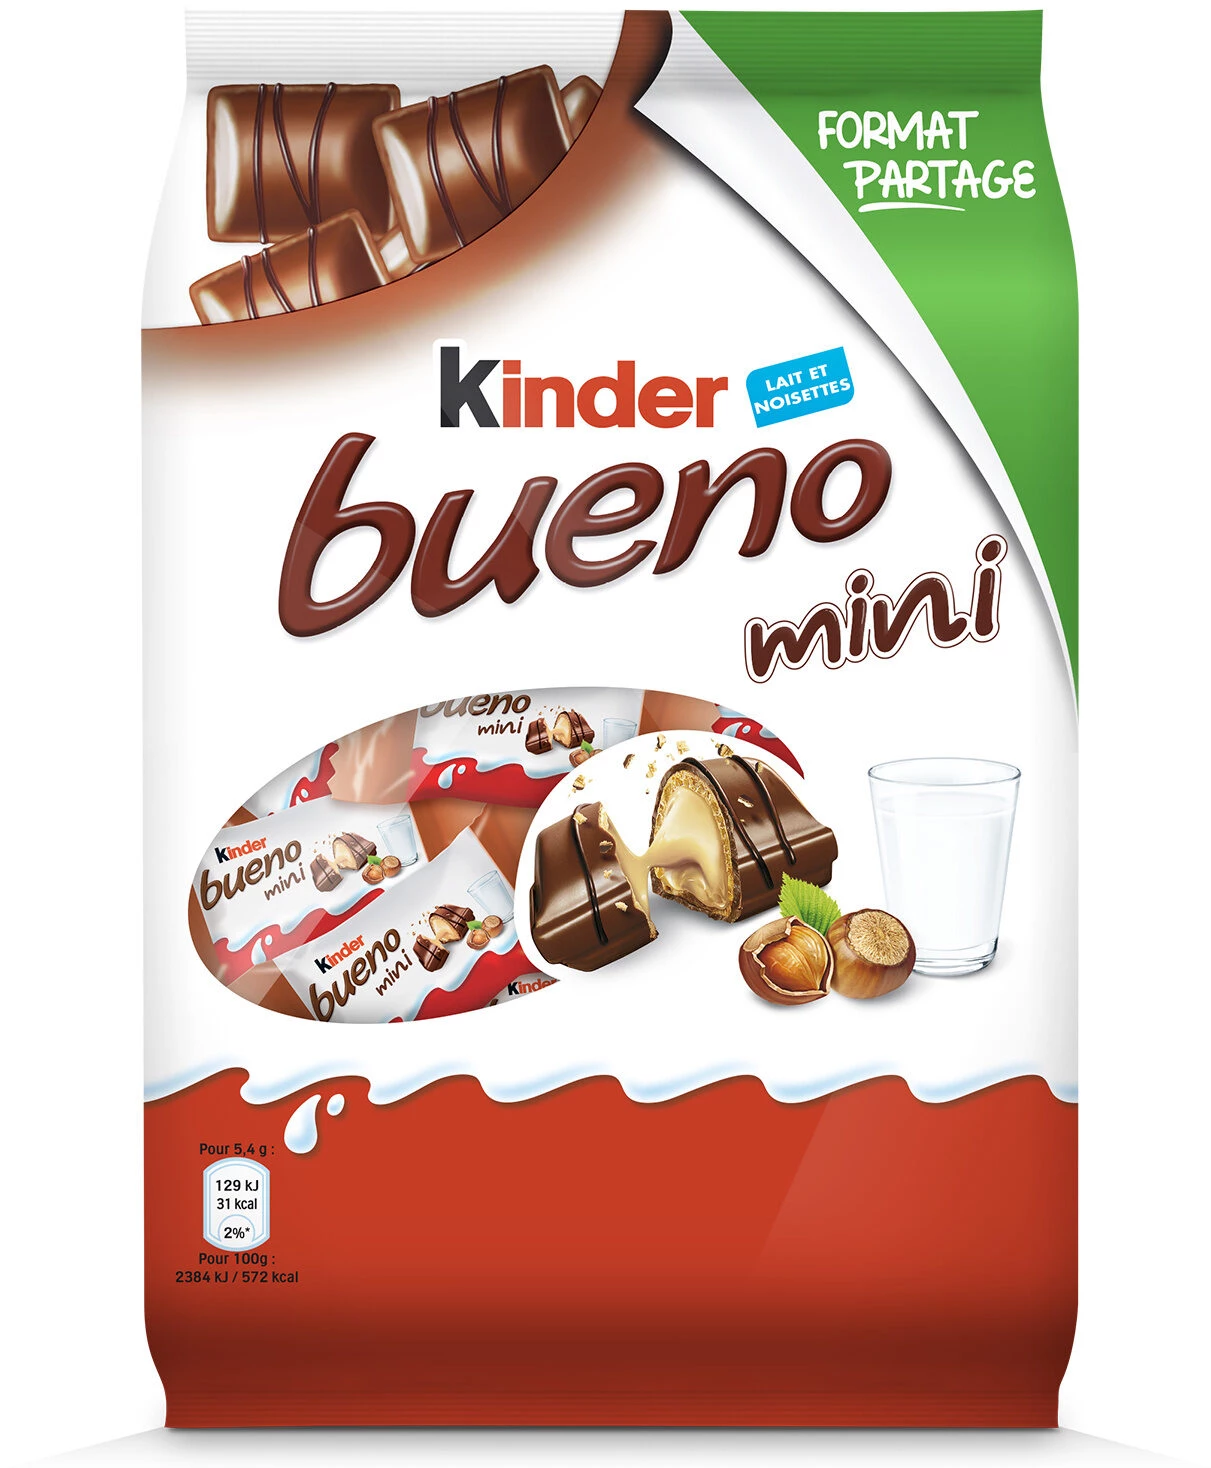 Kinder Bueno 迷你牛奶巧克力威化饼干 -216g - KINDER